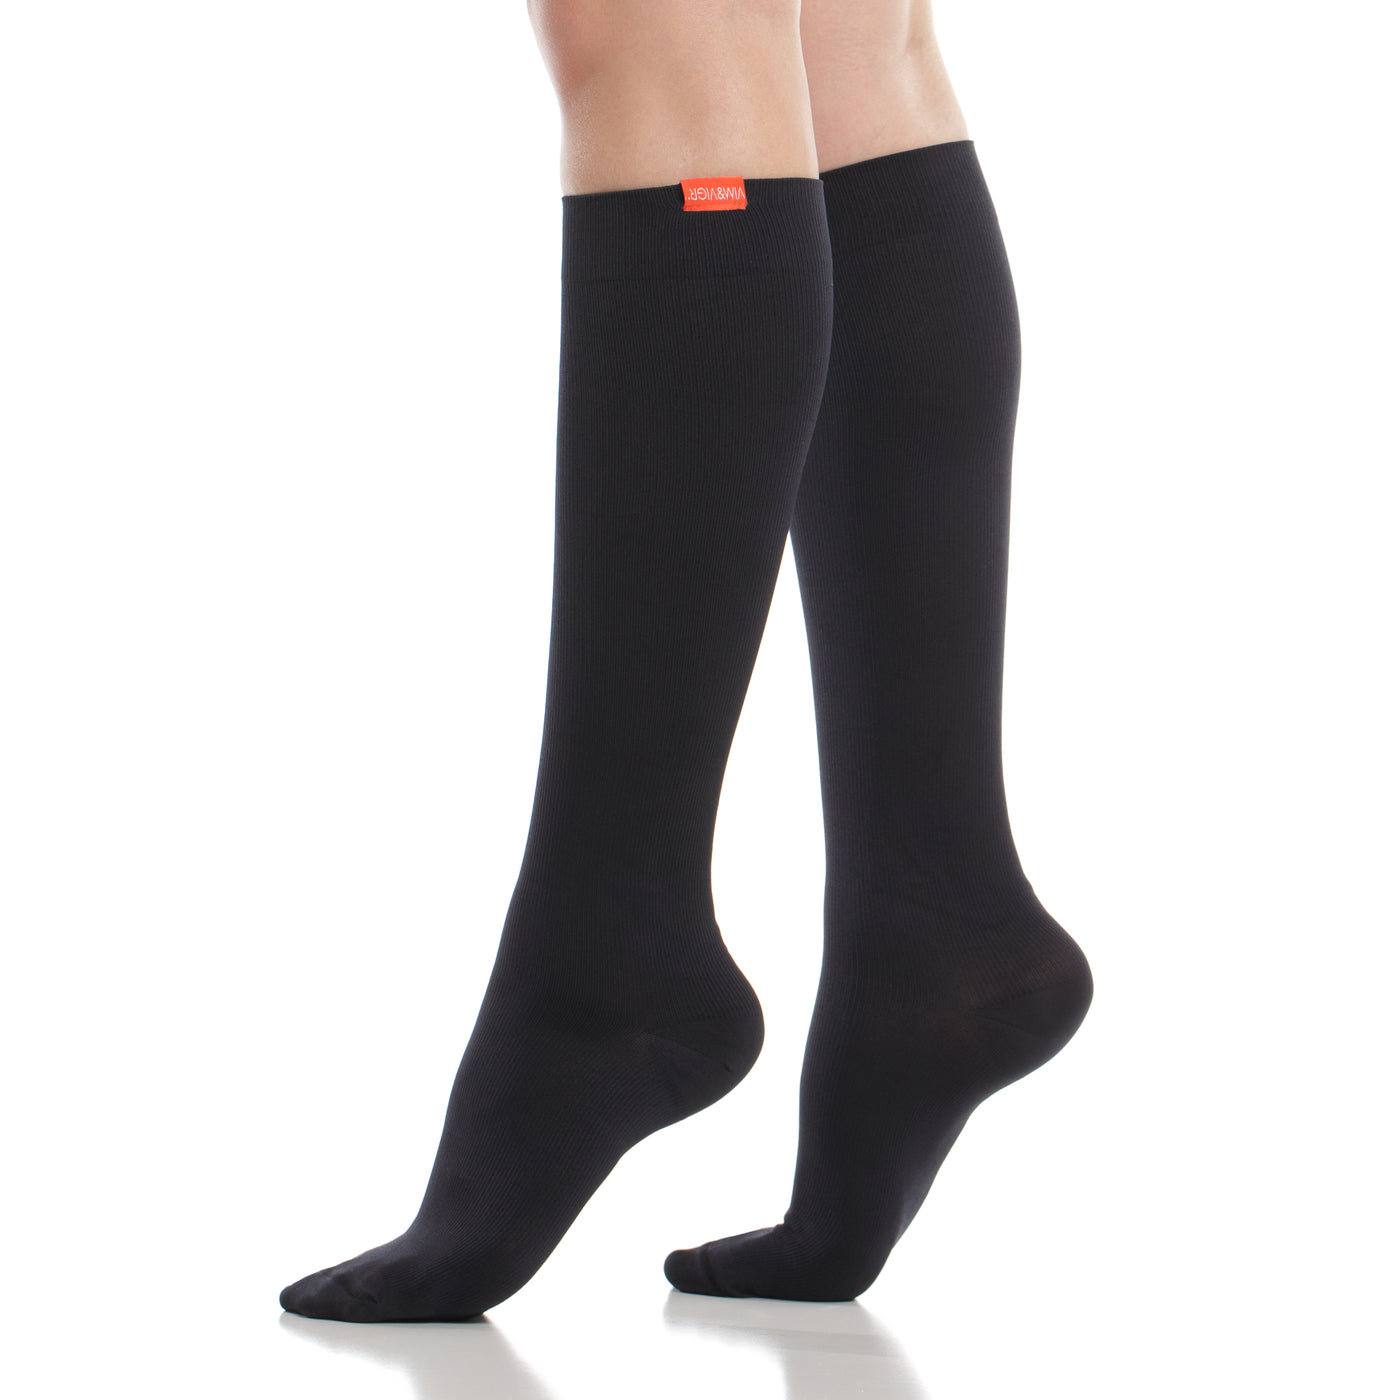 15-20 mmHg: Solid (Cotton) Moisture-wick Nylon compression socks